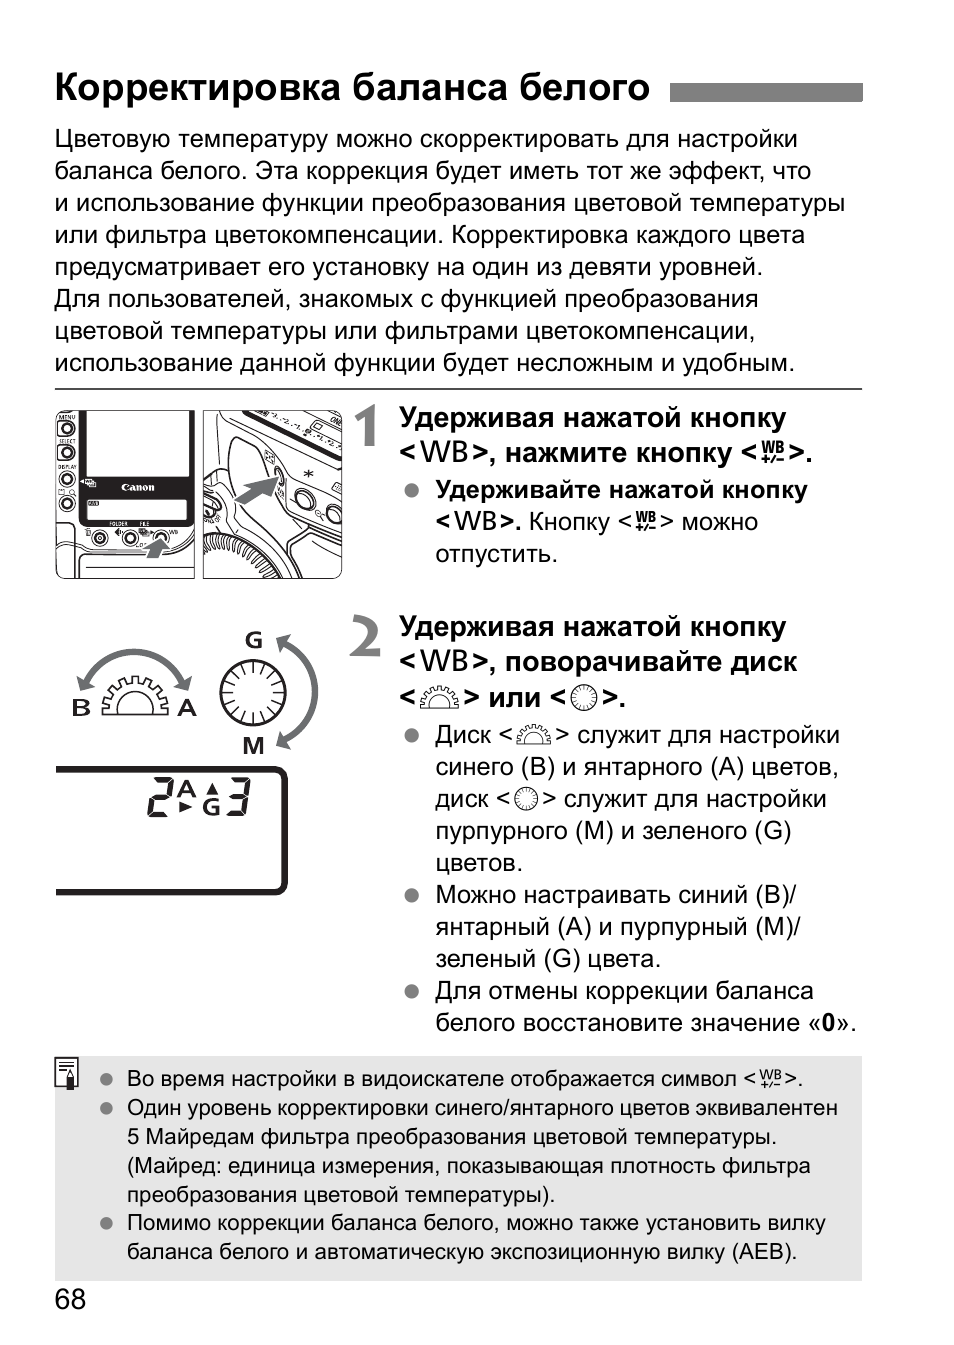 Корректировка баланса белого | Инструкция по эксплуатации Canon EOS 1D Mark II N | Страница 68 / 196